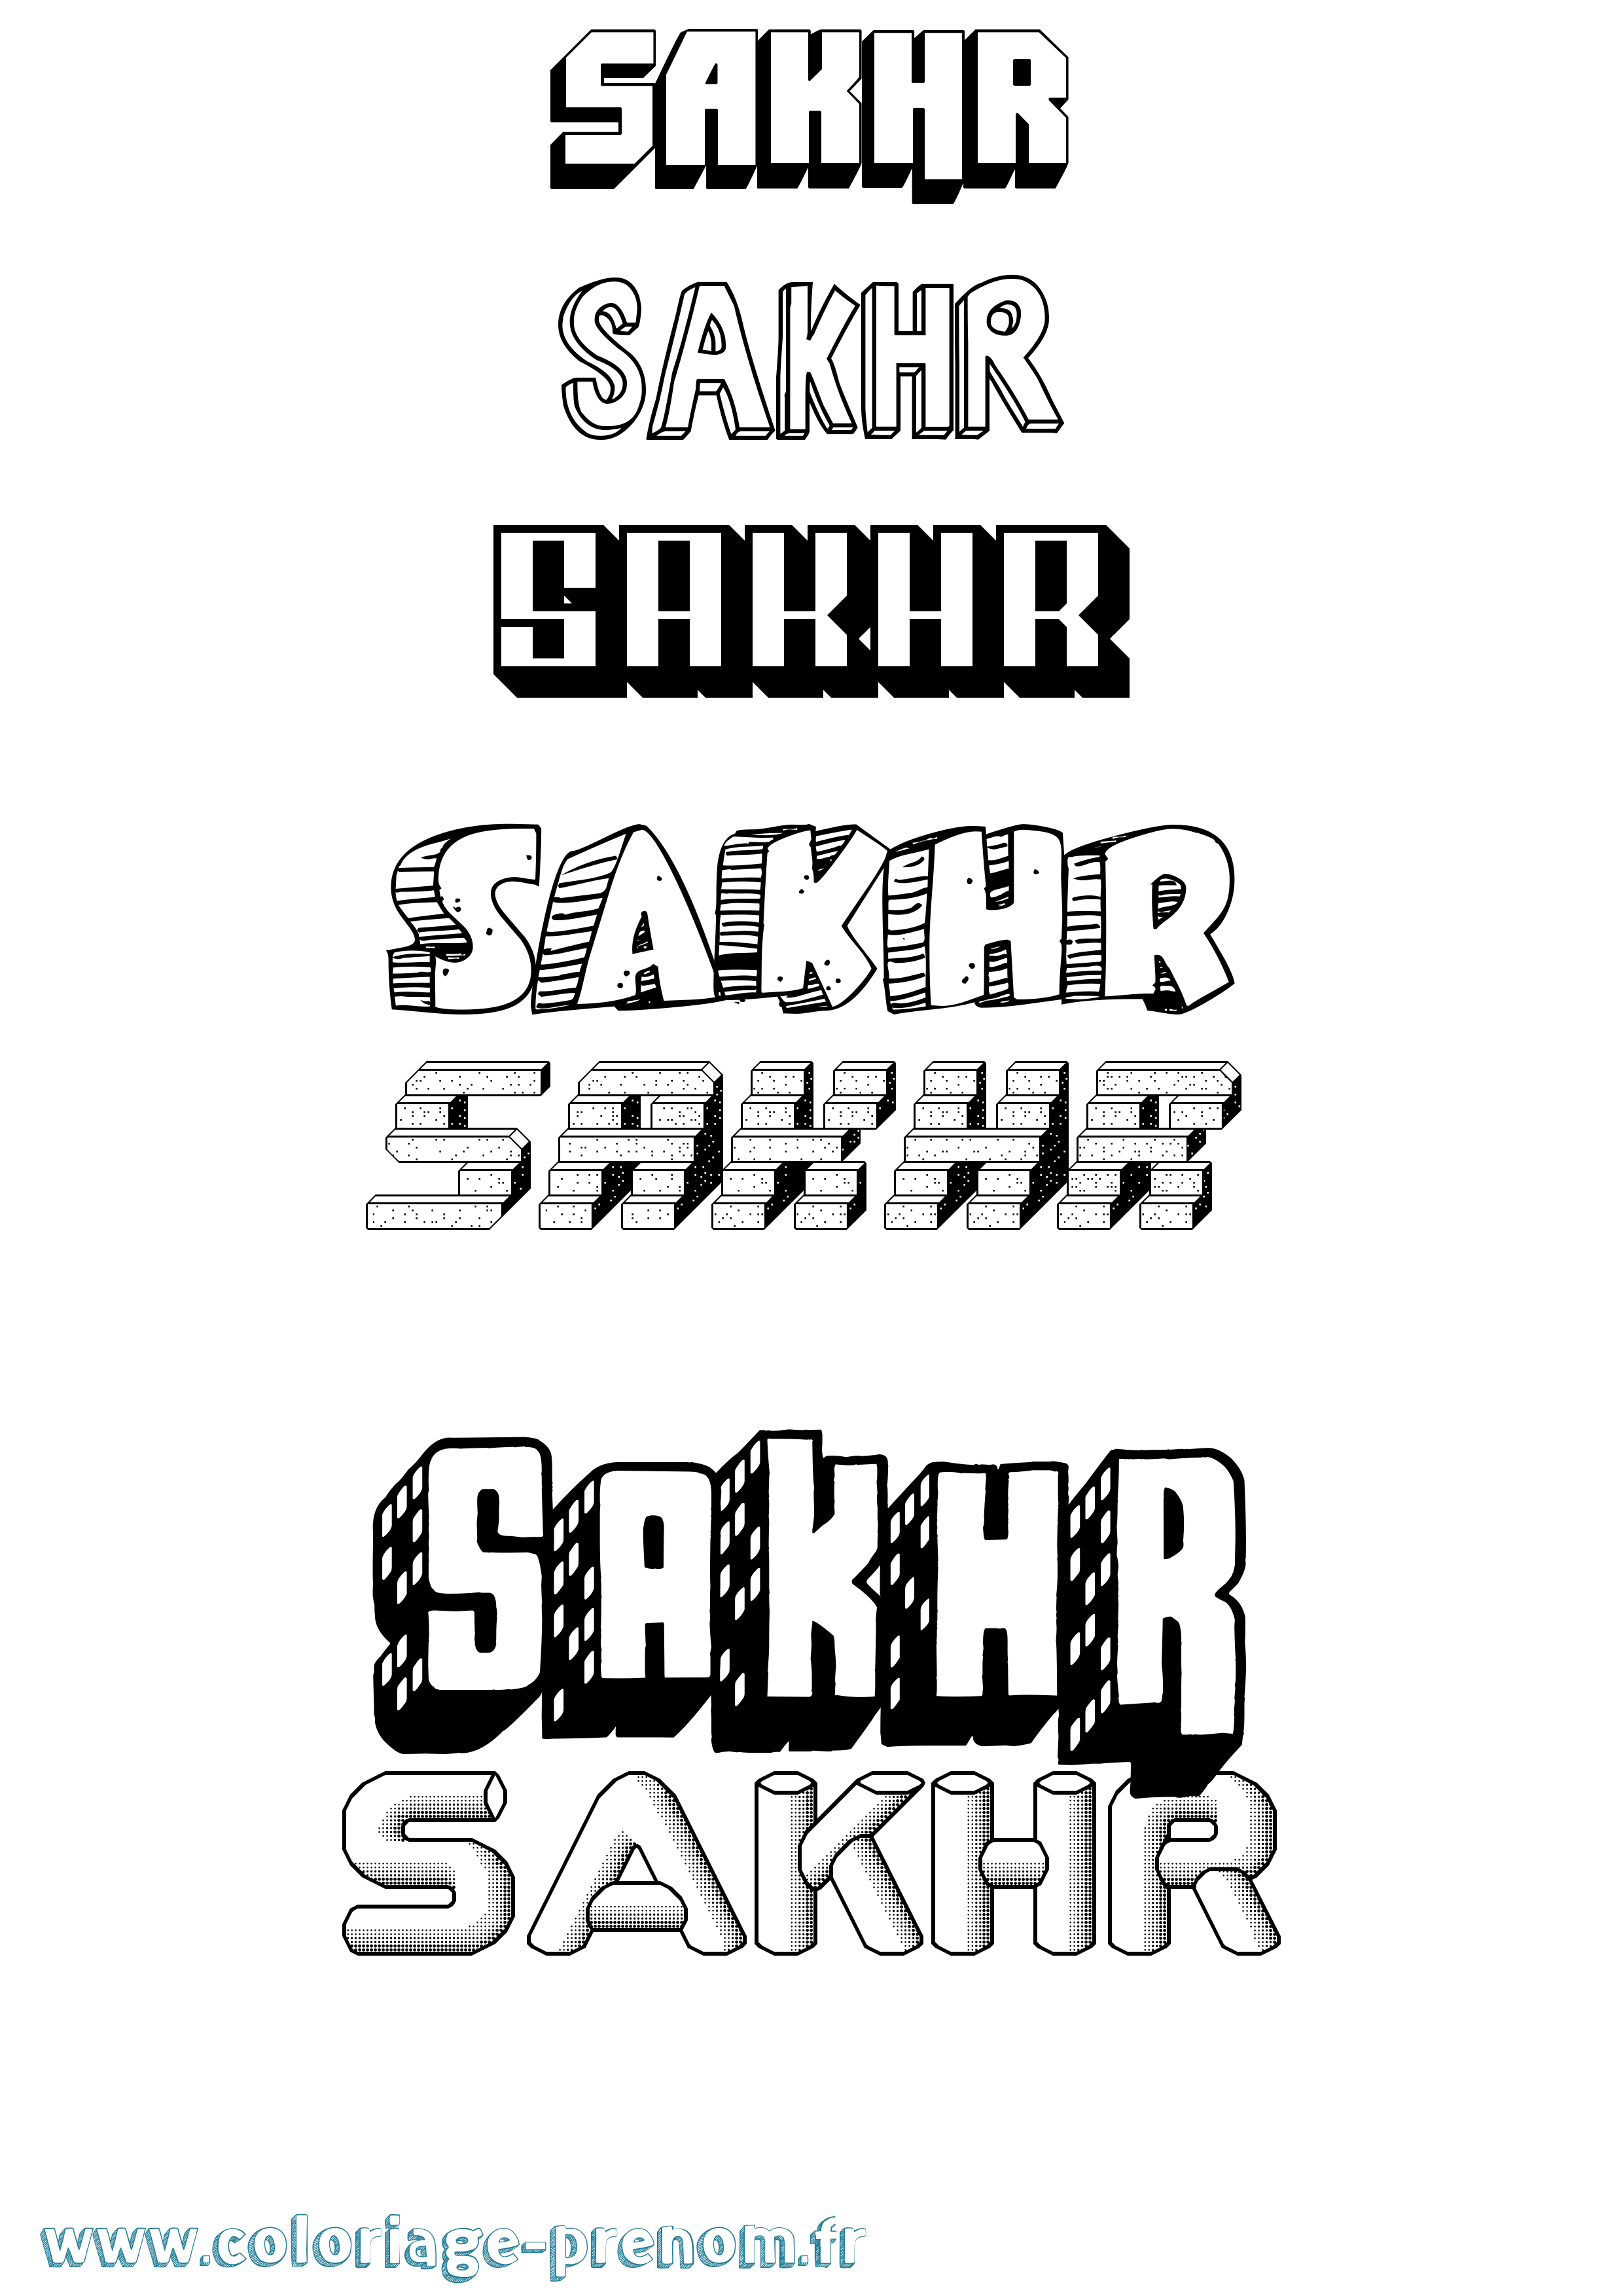 Coloriage prénom Sakhr Effet 3D